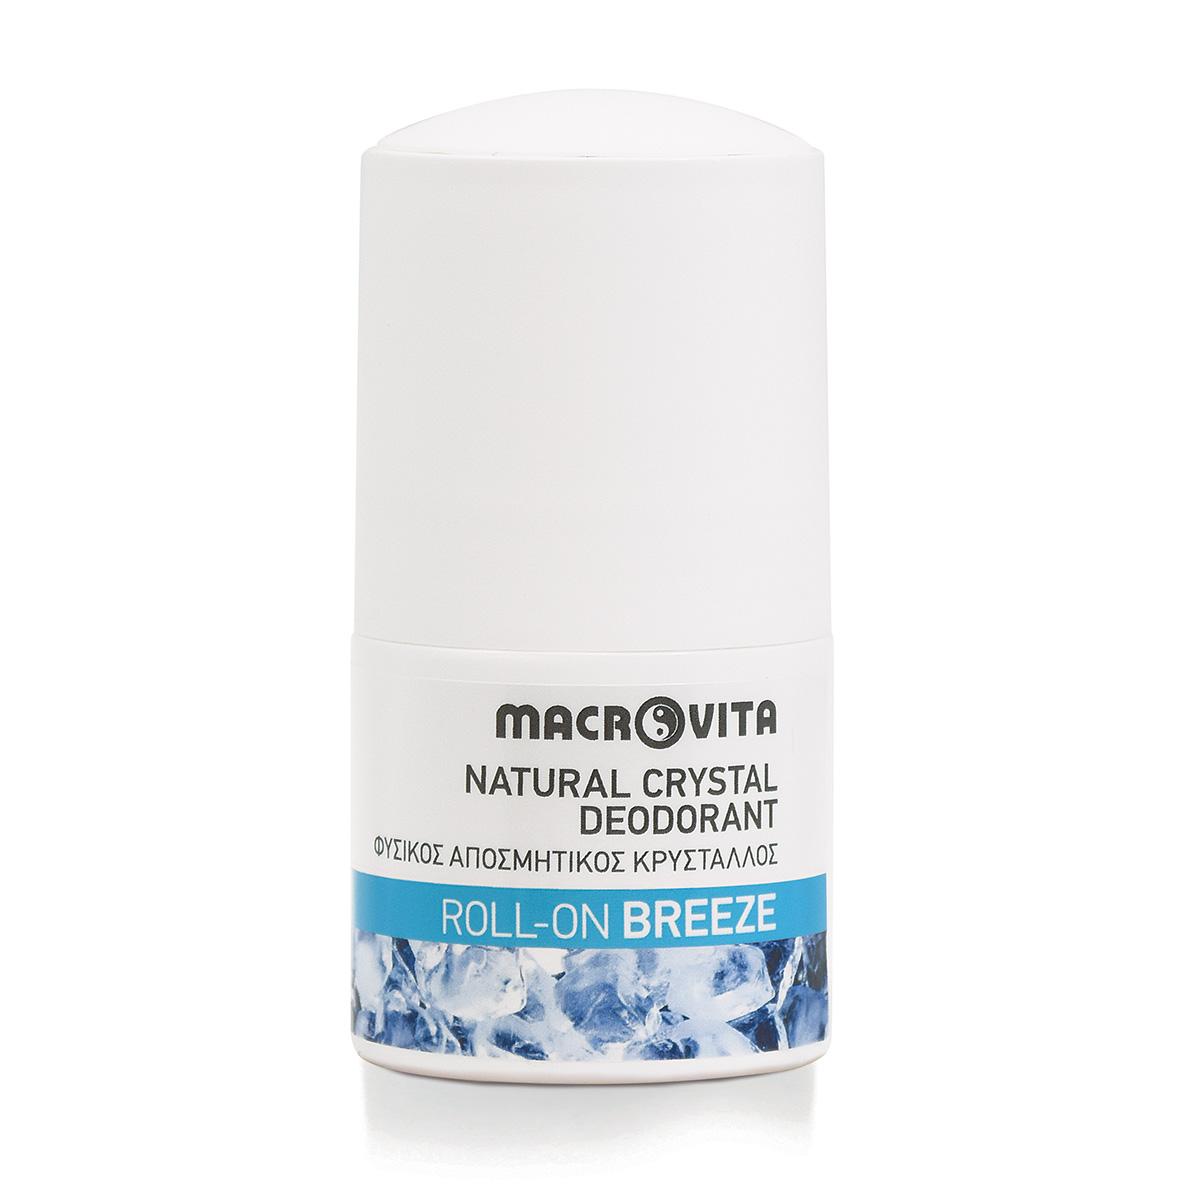 Selected image for MACROVITA Prirodni kristalni roll-on dezodorans Breeze 50ml